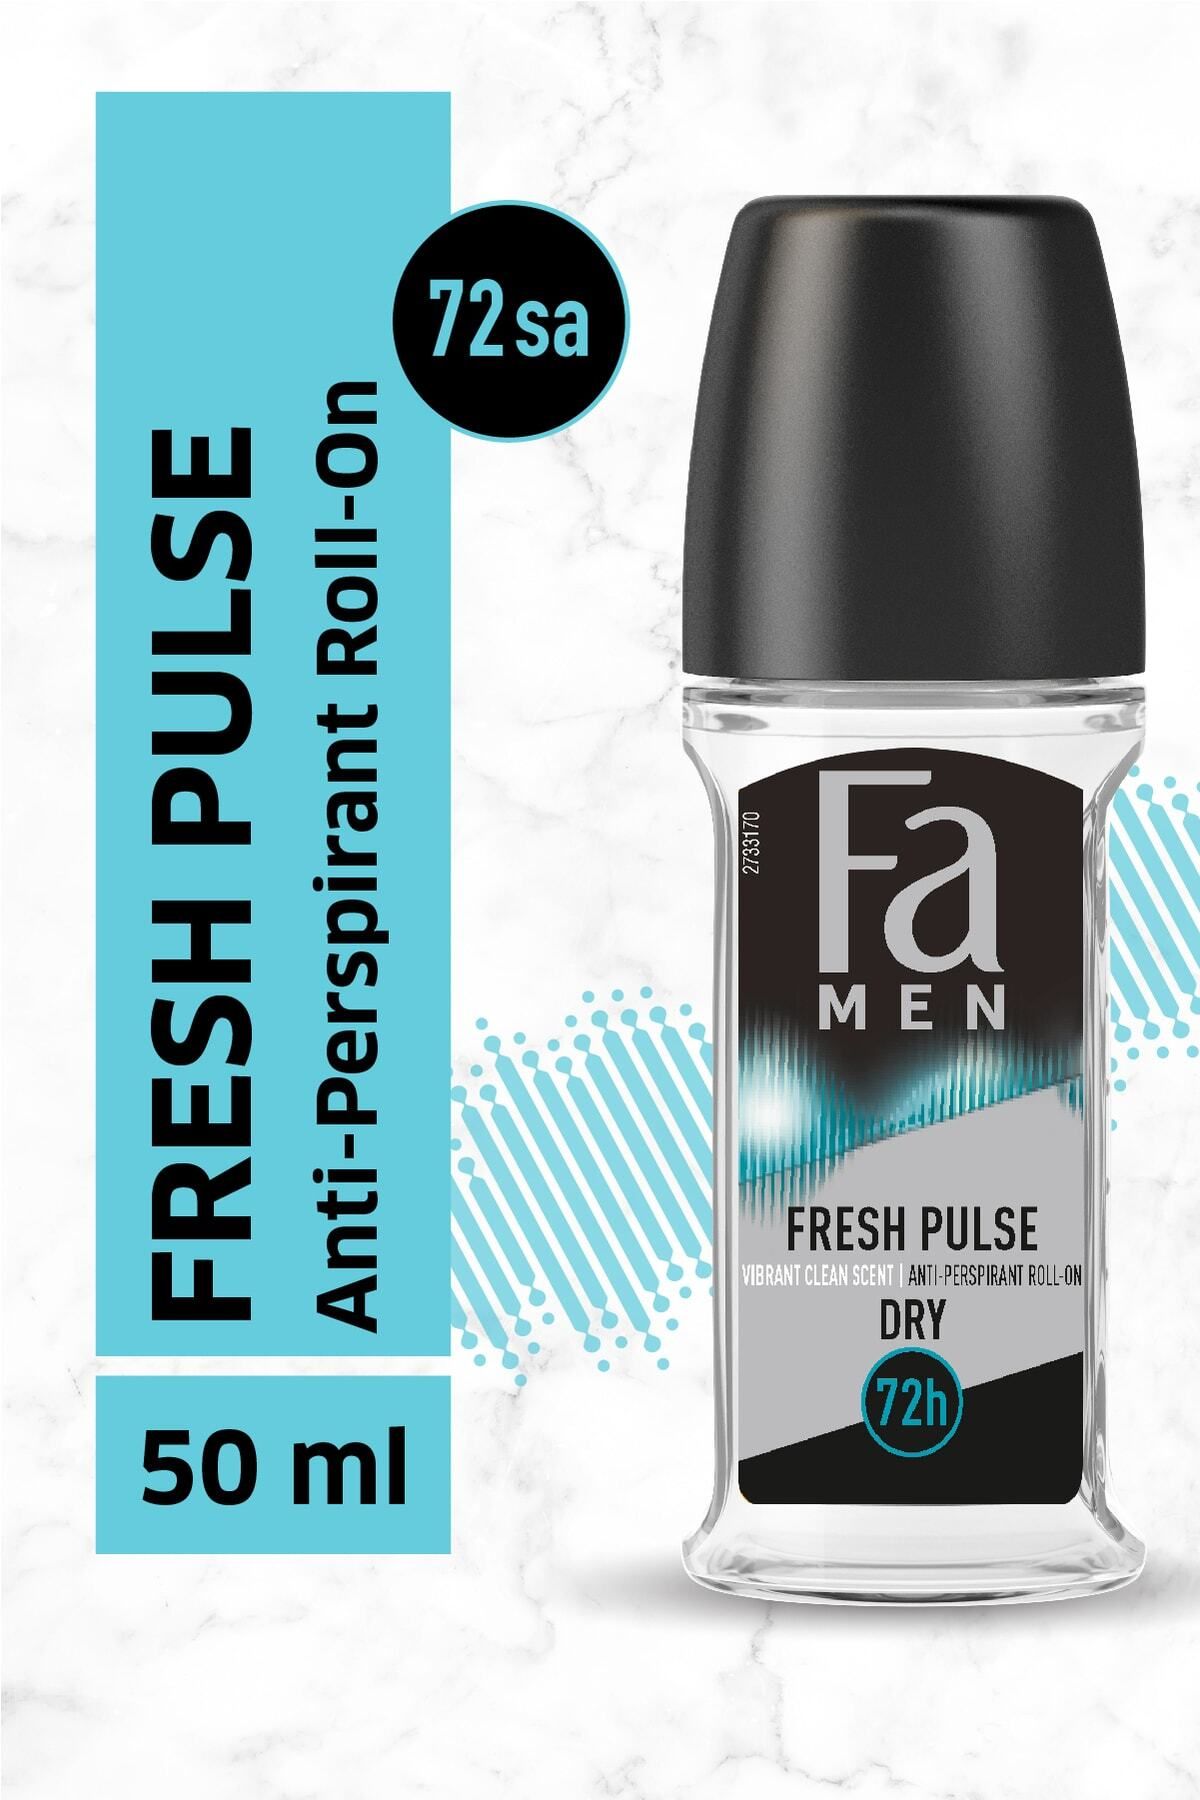 Fa Fresh Pulse Roll-on 50 ml